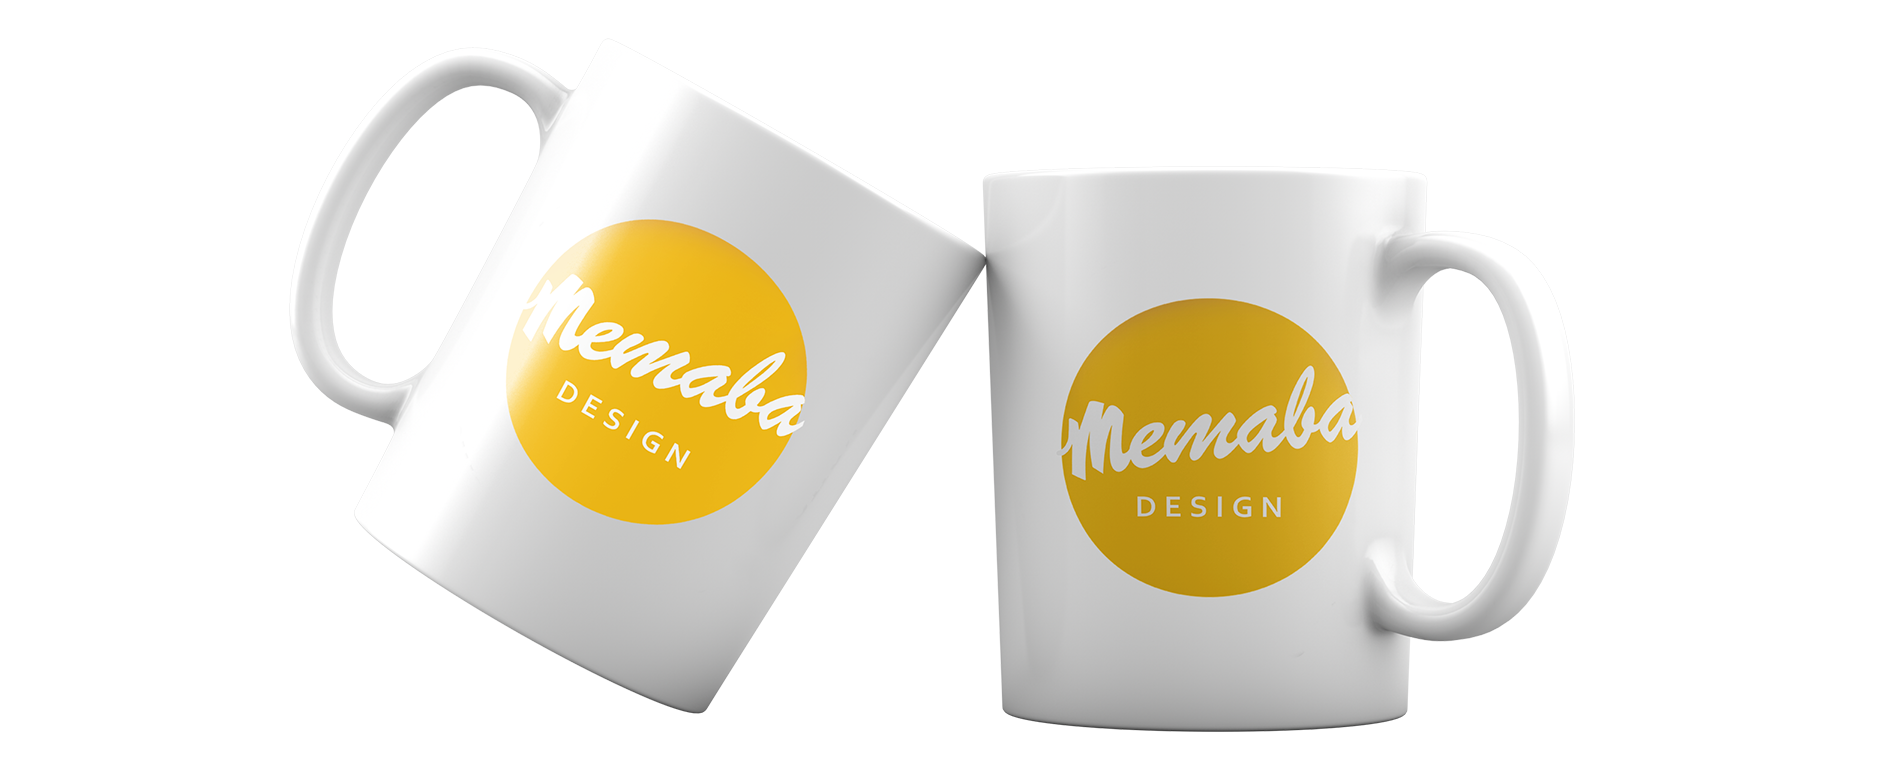 Memaba-Design-Kontakt-Header-1